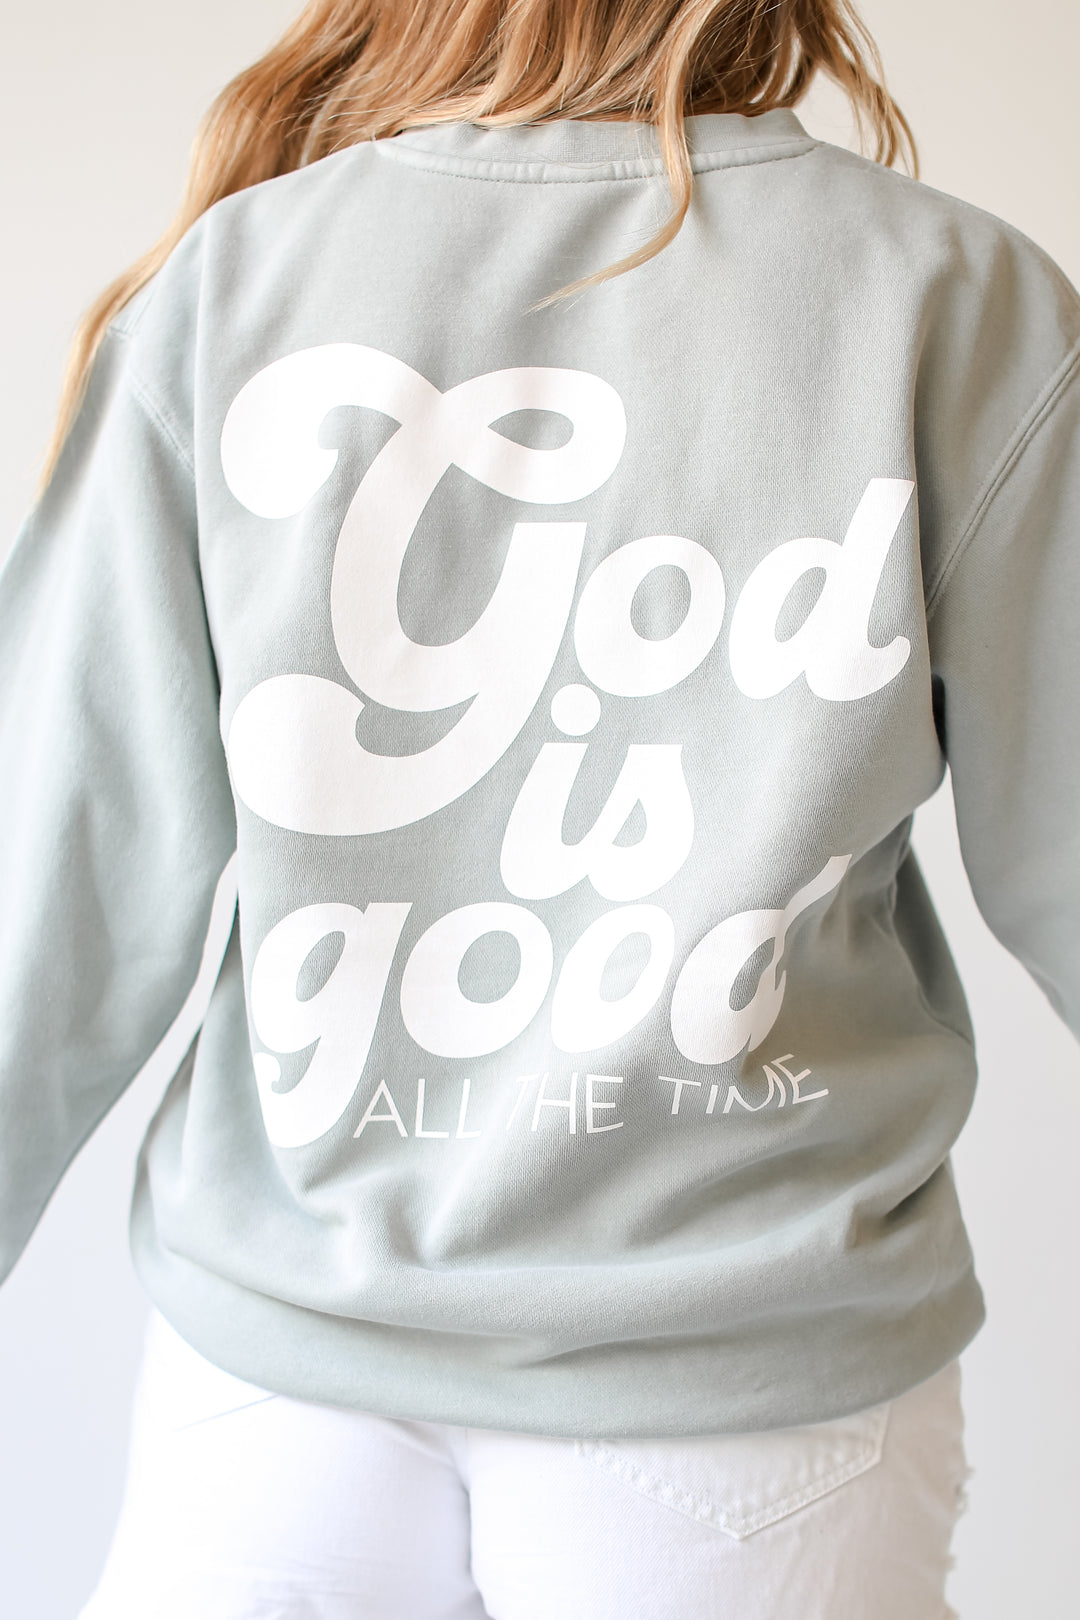 Sage God Is Good All The Time Sweatshirt. Graphic Sweatshirt. Christian Sweatshirts. Jesus Oversized Sweatshirts